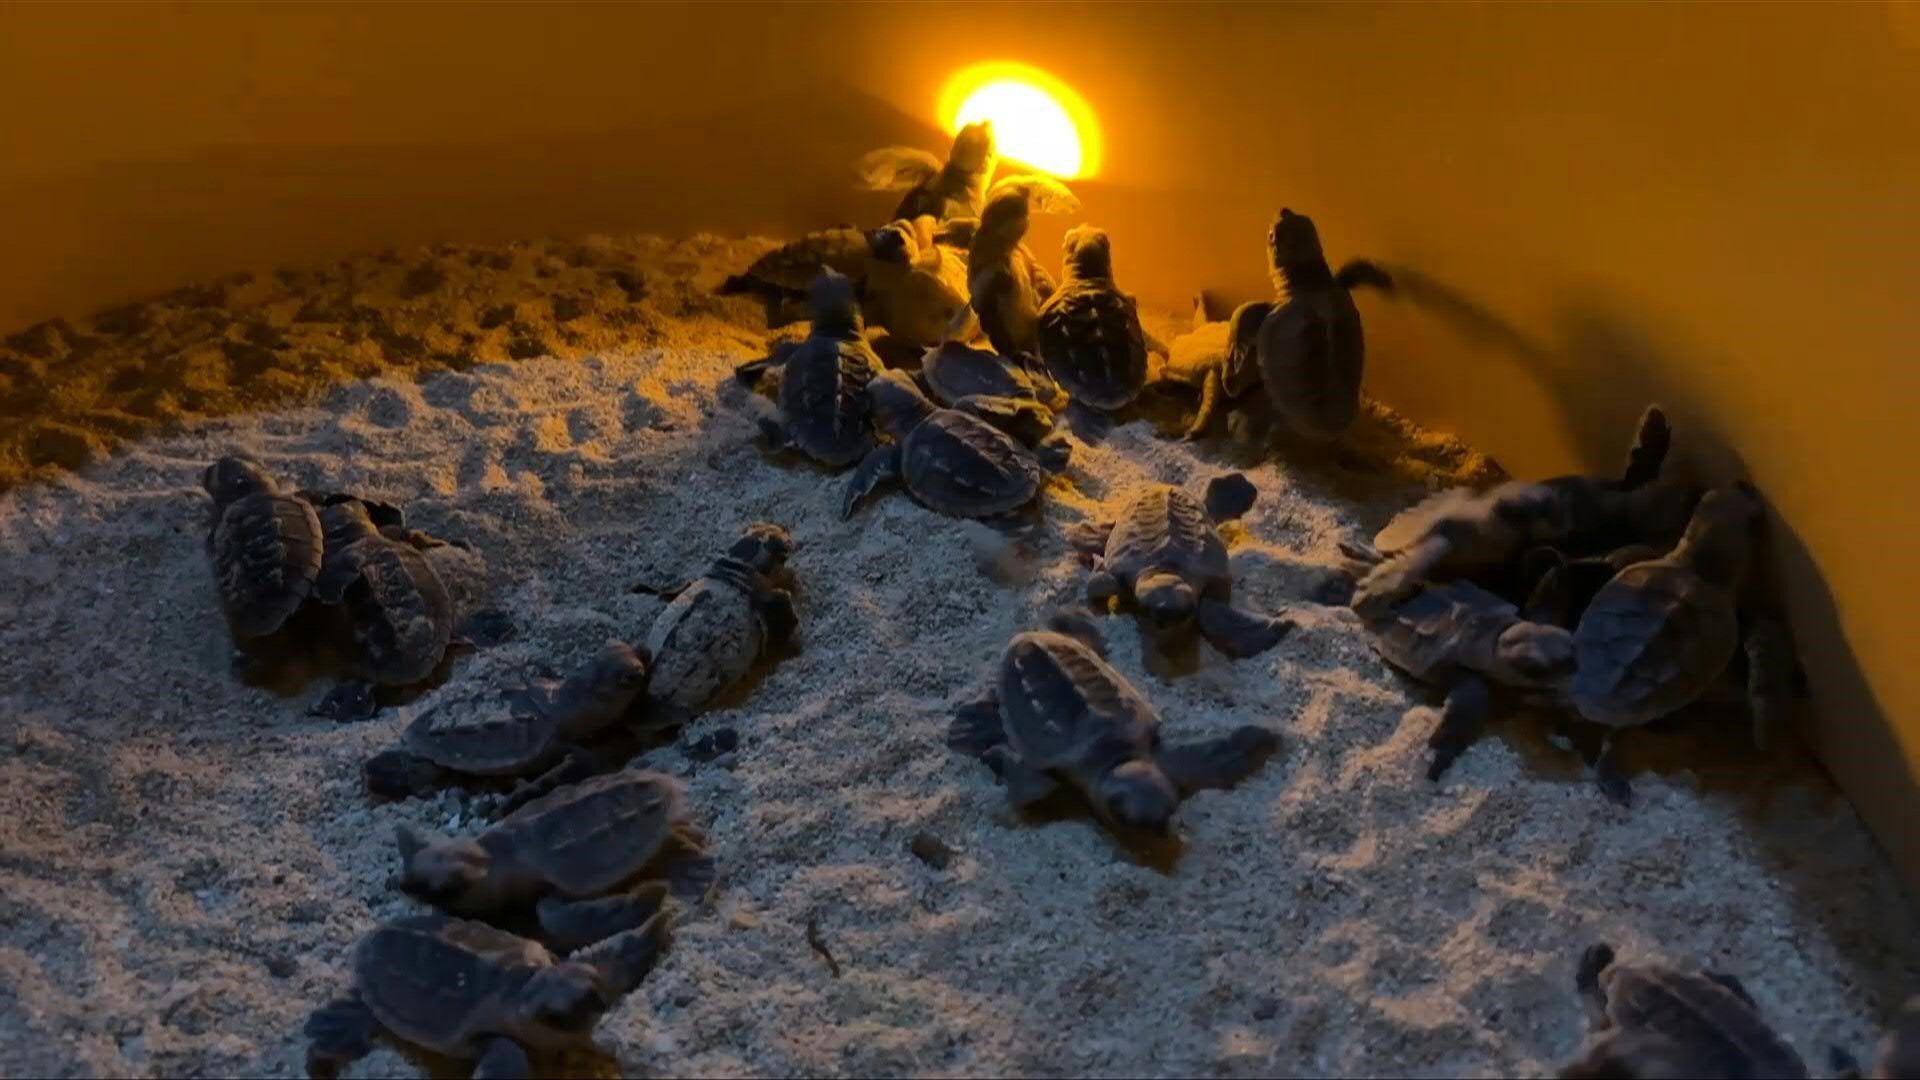 Parmi les milliers de tortues de cette espèce qui naîtront cette année sur cette plage, seule 1 sur 1000 survivra aux prédateurs et aux filets de pêche pour atteindre l'âge adulte à 25 ans.